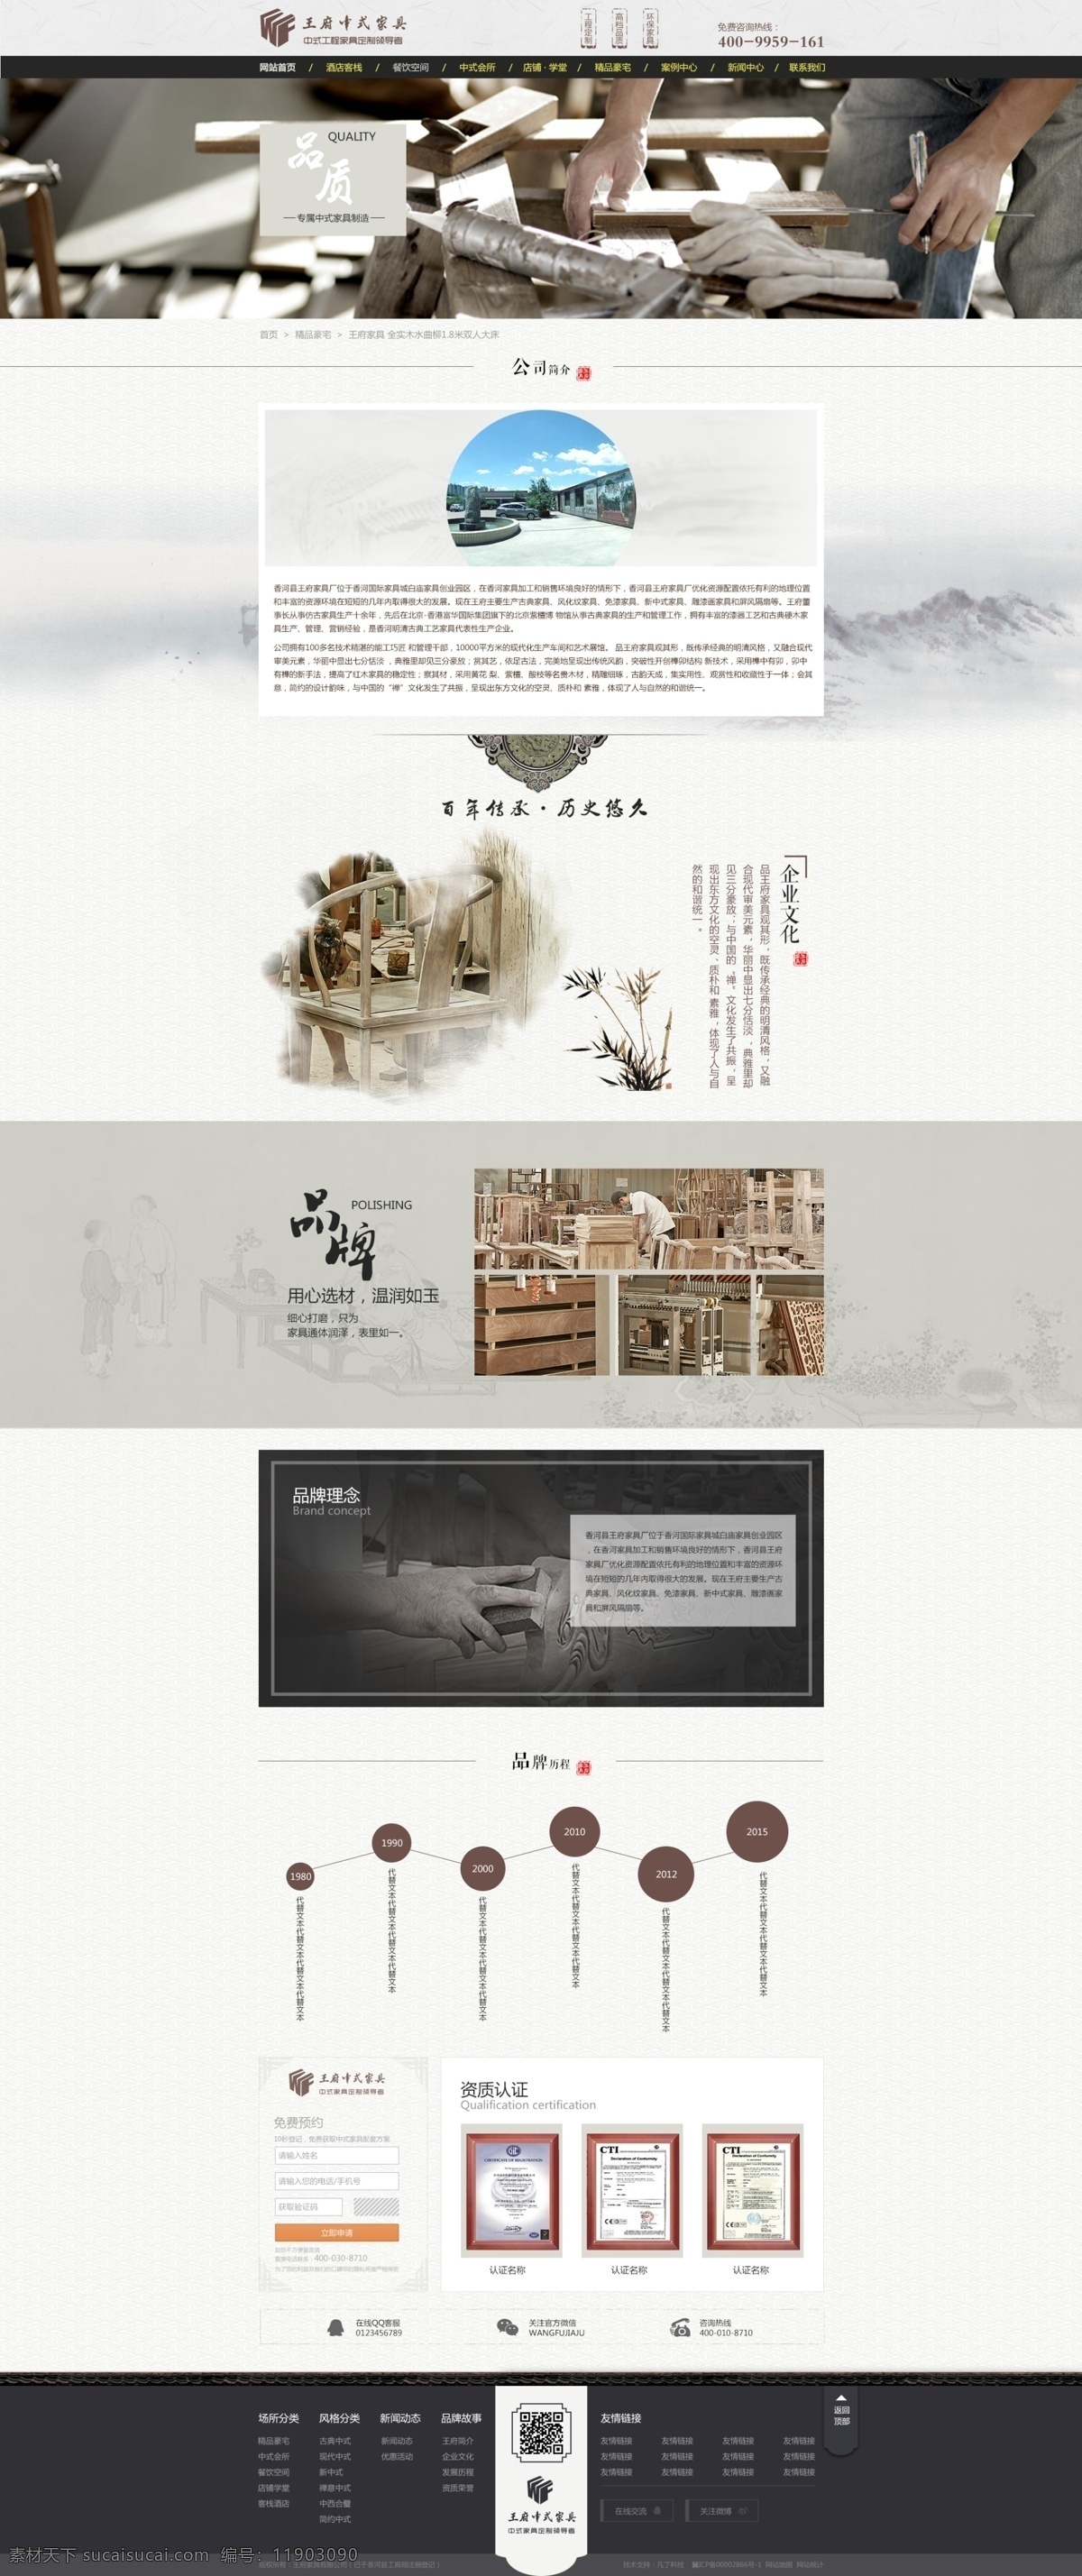 中式 家具 公司简介 页面 中式家具 页面设计 中国风 传统风格 品牌故事 发展历程 水墨风格 家具页面设计 家具品牌 白色